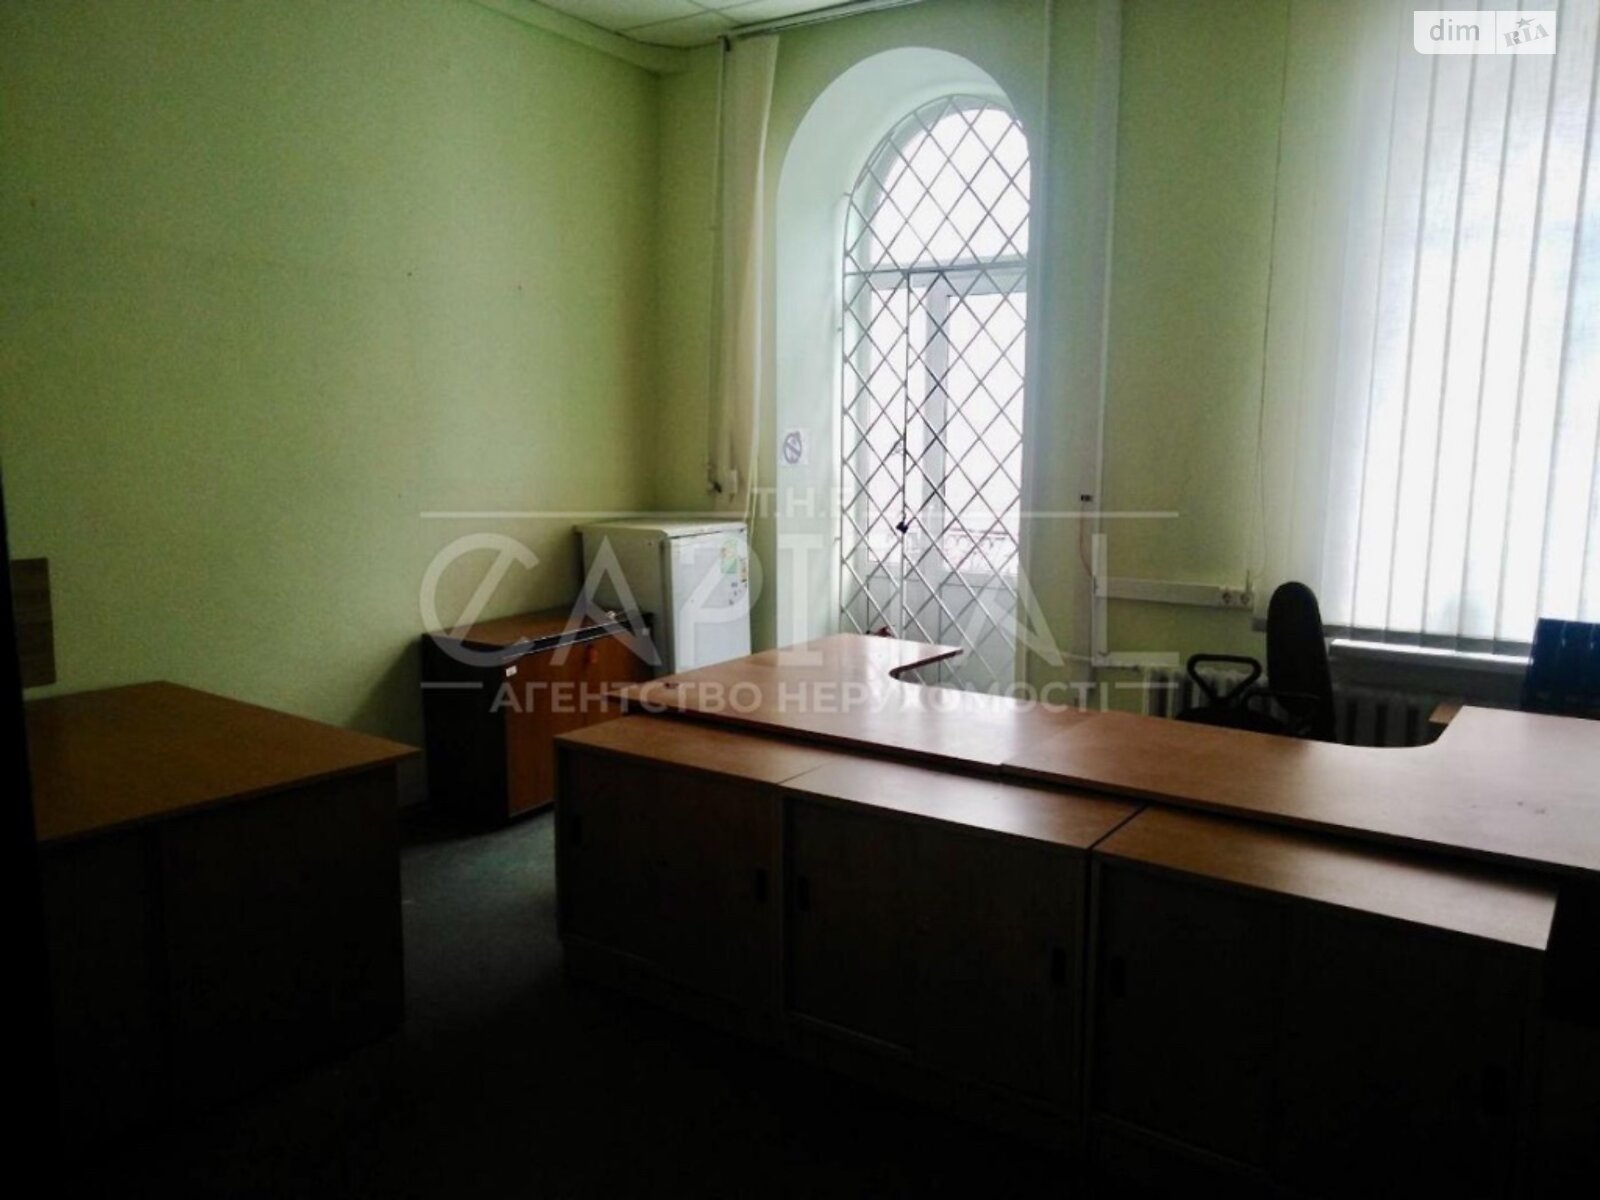 Аренда офисного помещения в Киеве, Софиевская улица 3, помещений - 8, этаж - 2 фото 1